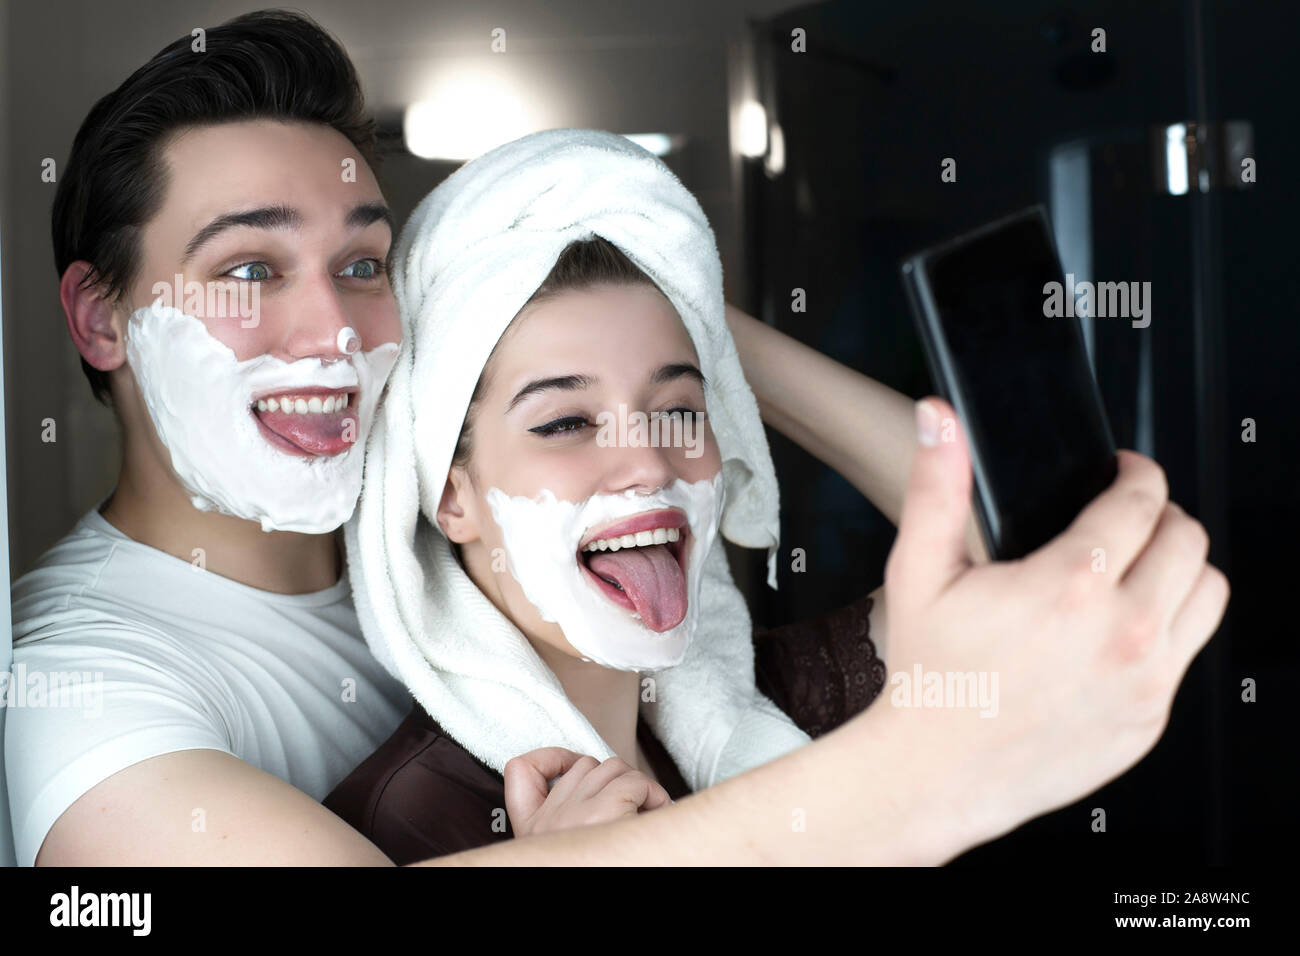 Lustig Paar gutaussehenden Mann und schöne Frau ein für selfie Spaß sowohl mit Rasierschaum auf ihren Gesichtern in Bad spielerische darstellen. Stockfoto